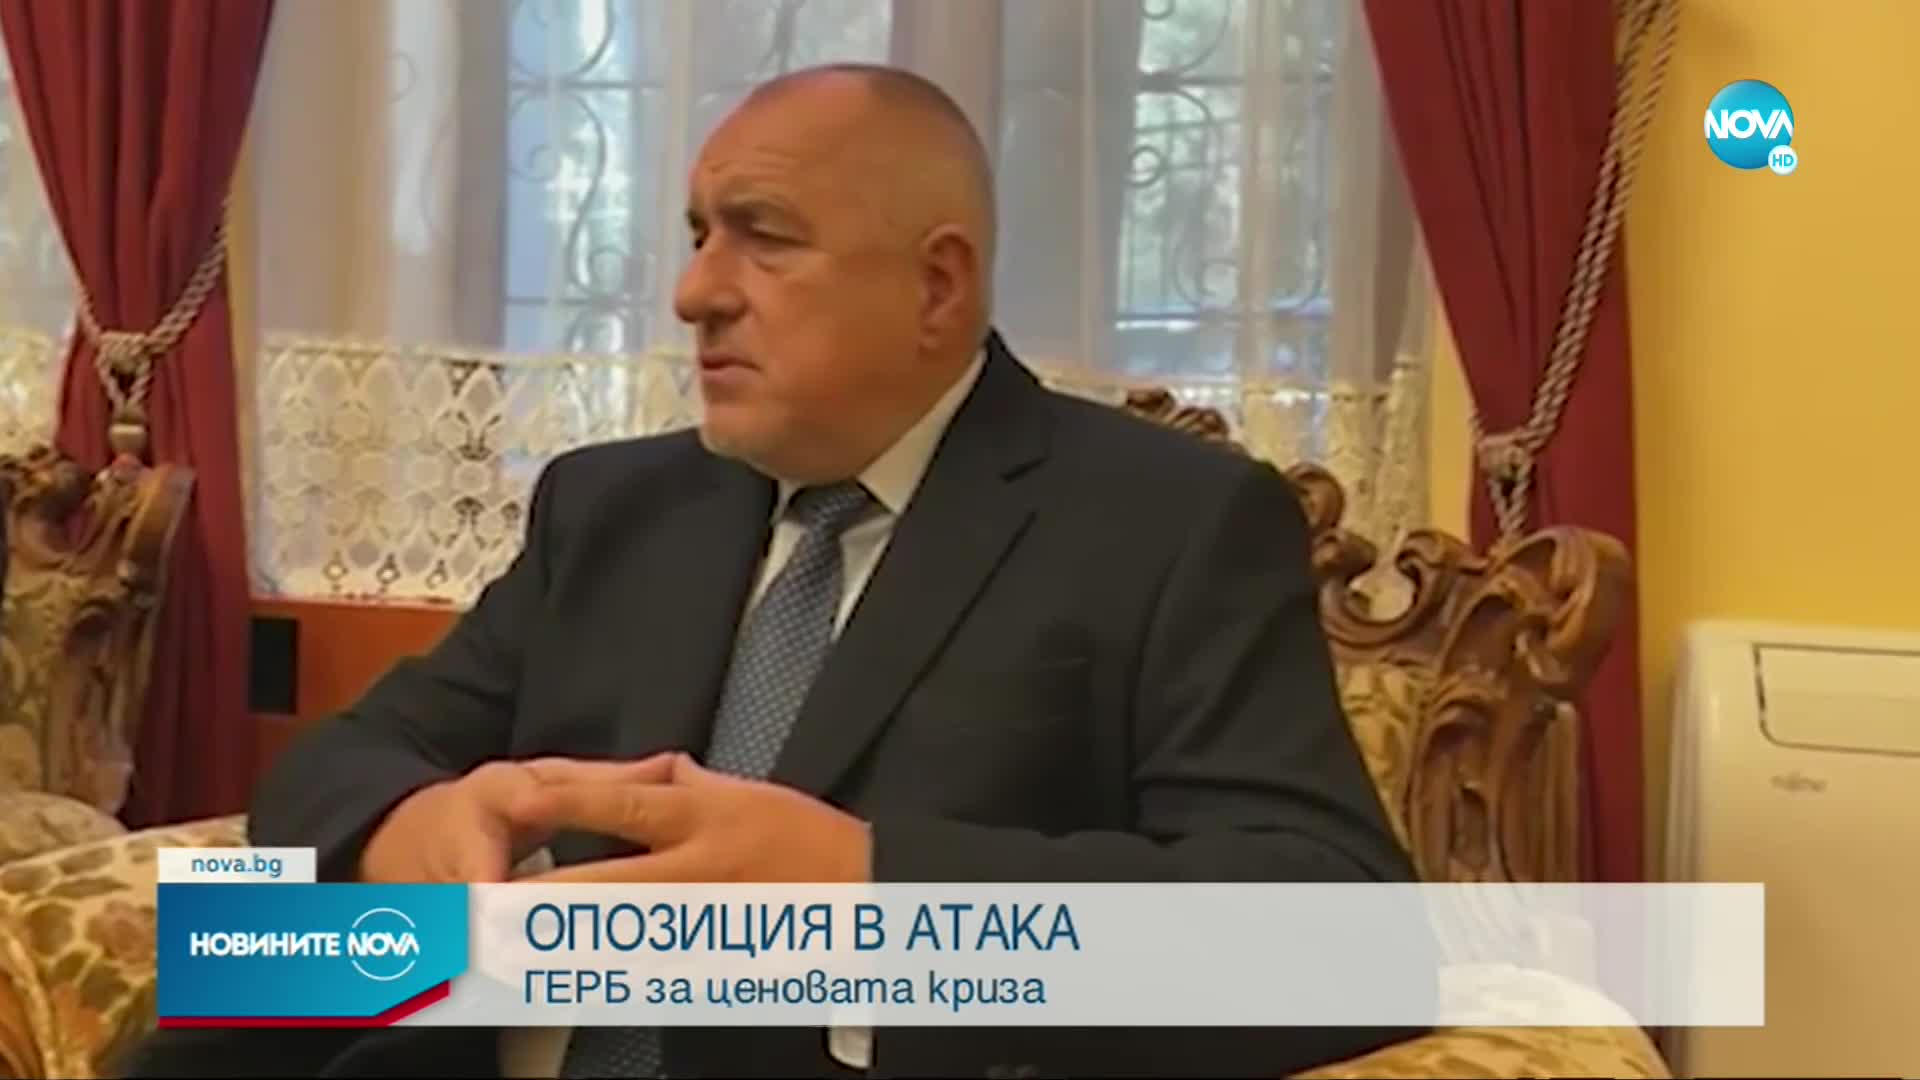 Борисов: Ще се борим докрай да отрегулираме цената на тока за храмовете и манастирите